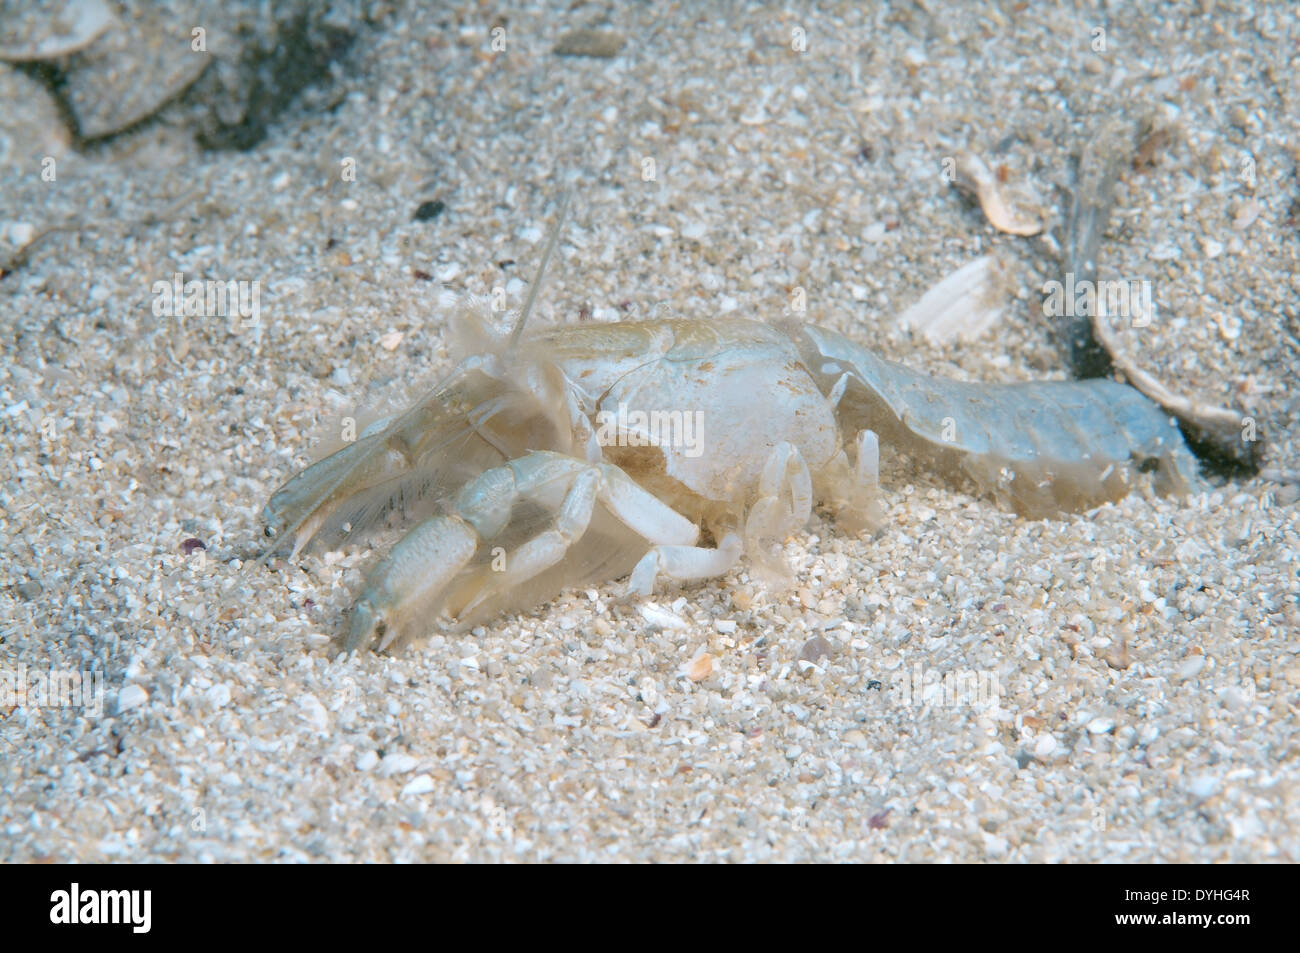 Mediterranean mud shrimp or burrowing shrimp (Upogebia pusilla) Stock Photo